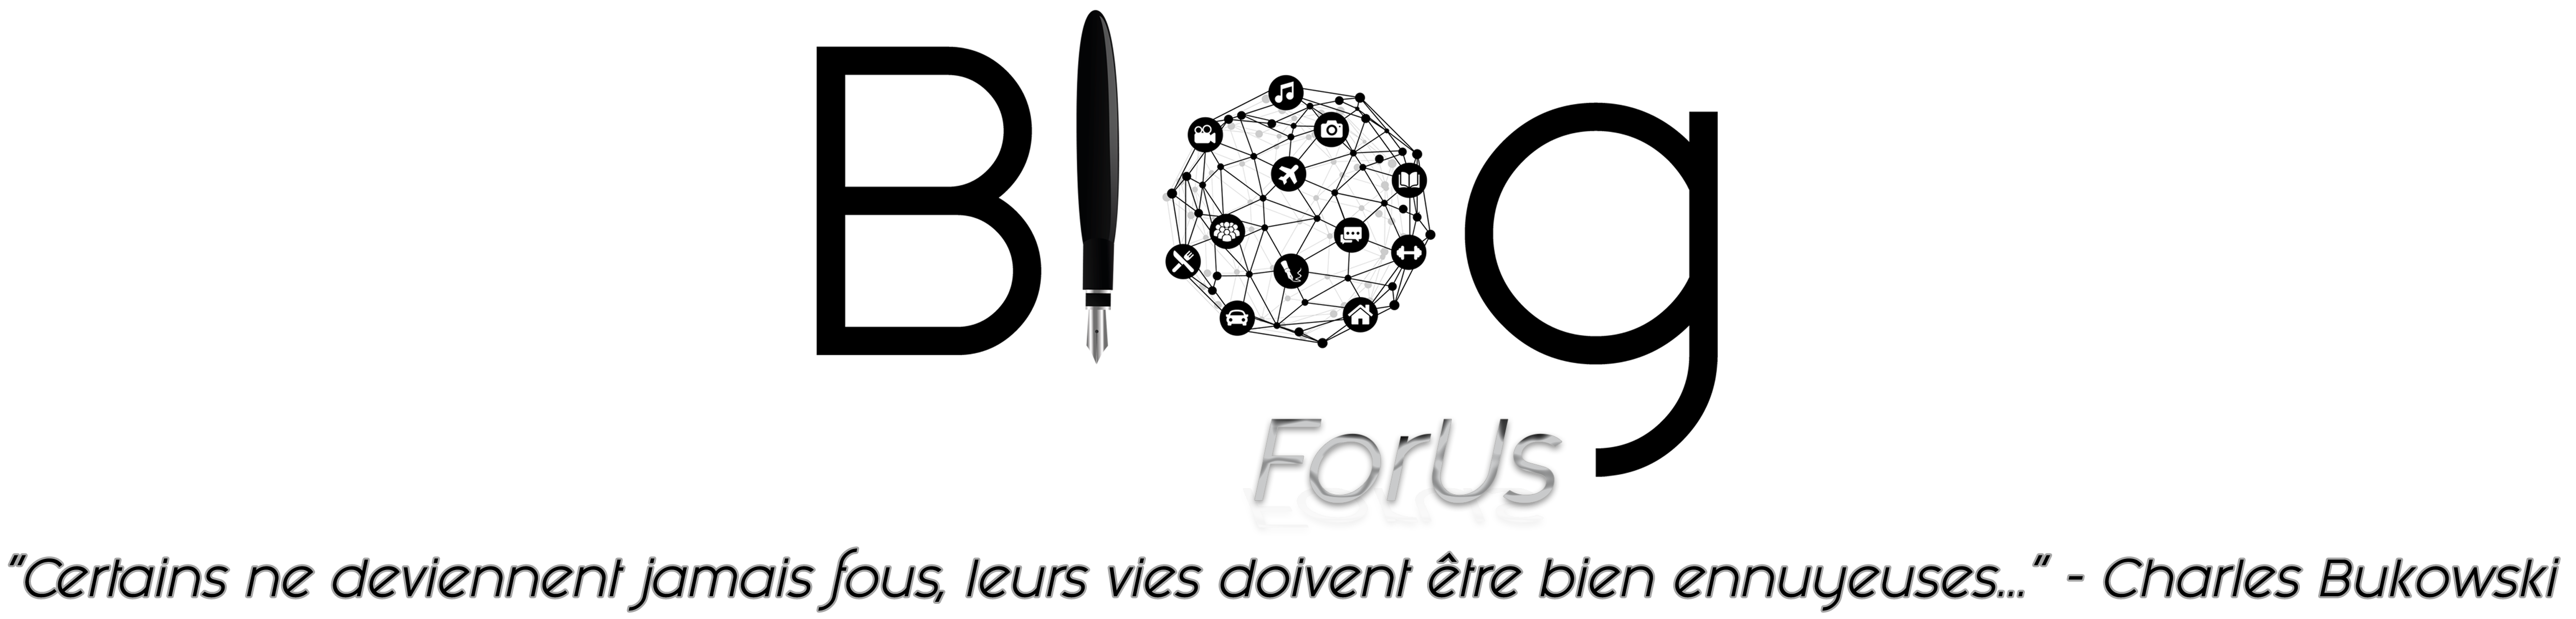 ForUs Blog